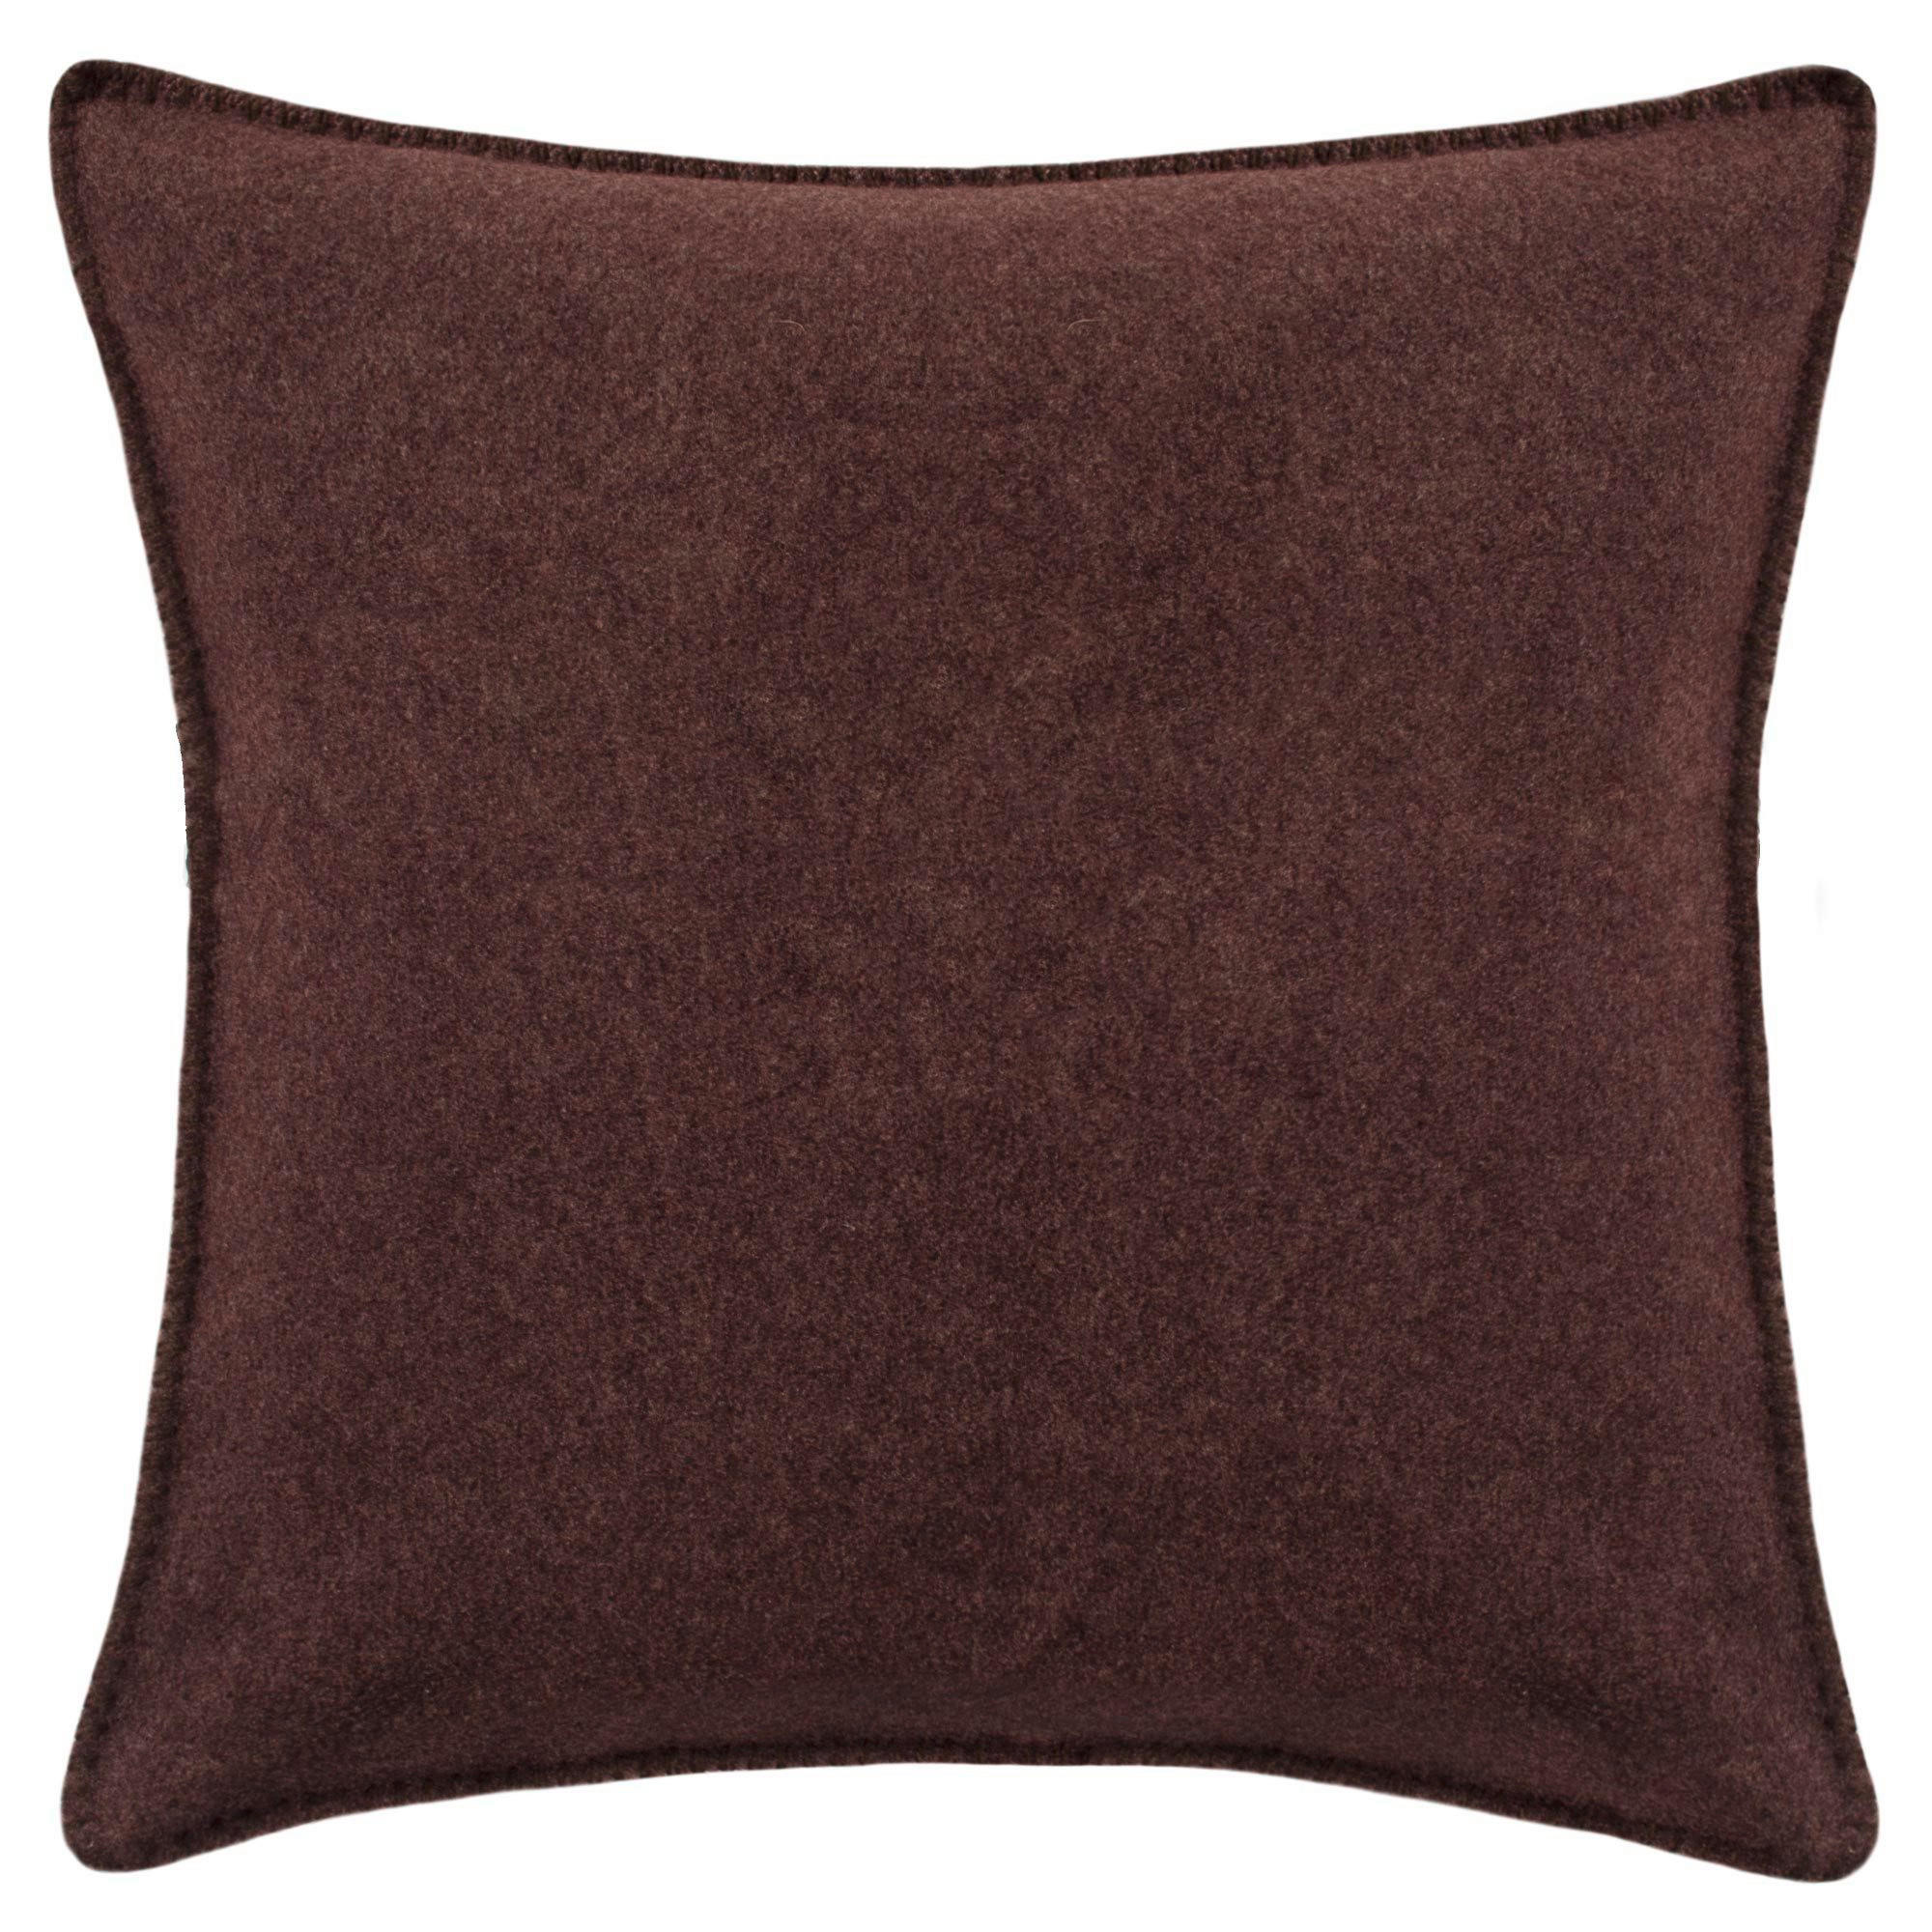 KISSENHÜLLE Soft-Fleece 50/50 cm  - Dunkelbraun, Basics, Textil (50/50cm) - Zoeppritz